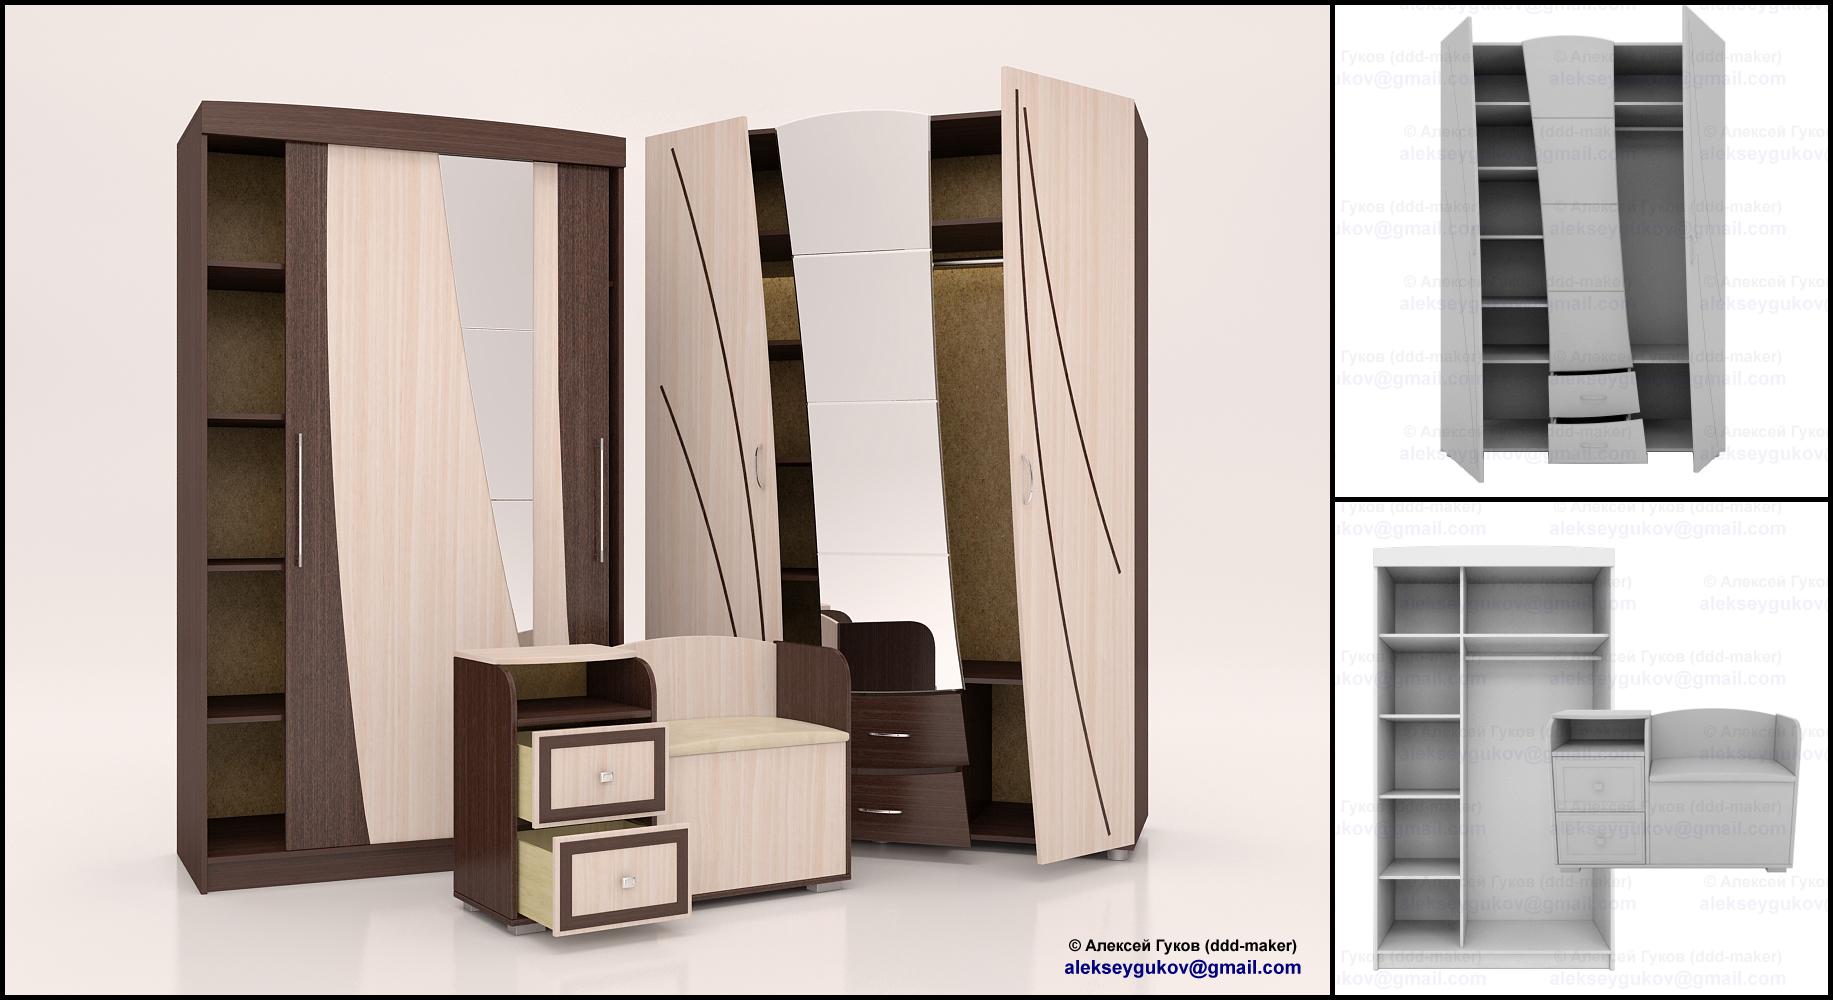 Моделирование и визуализация корпусной мебели